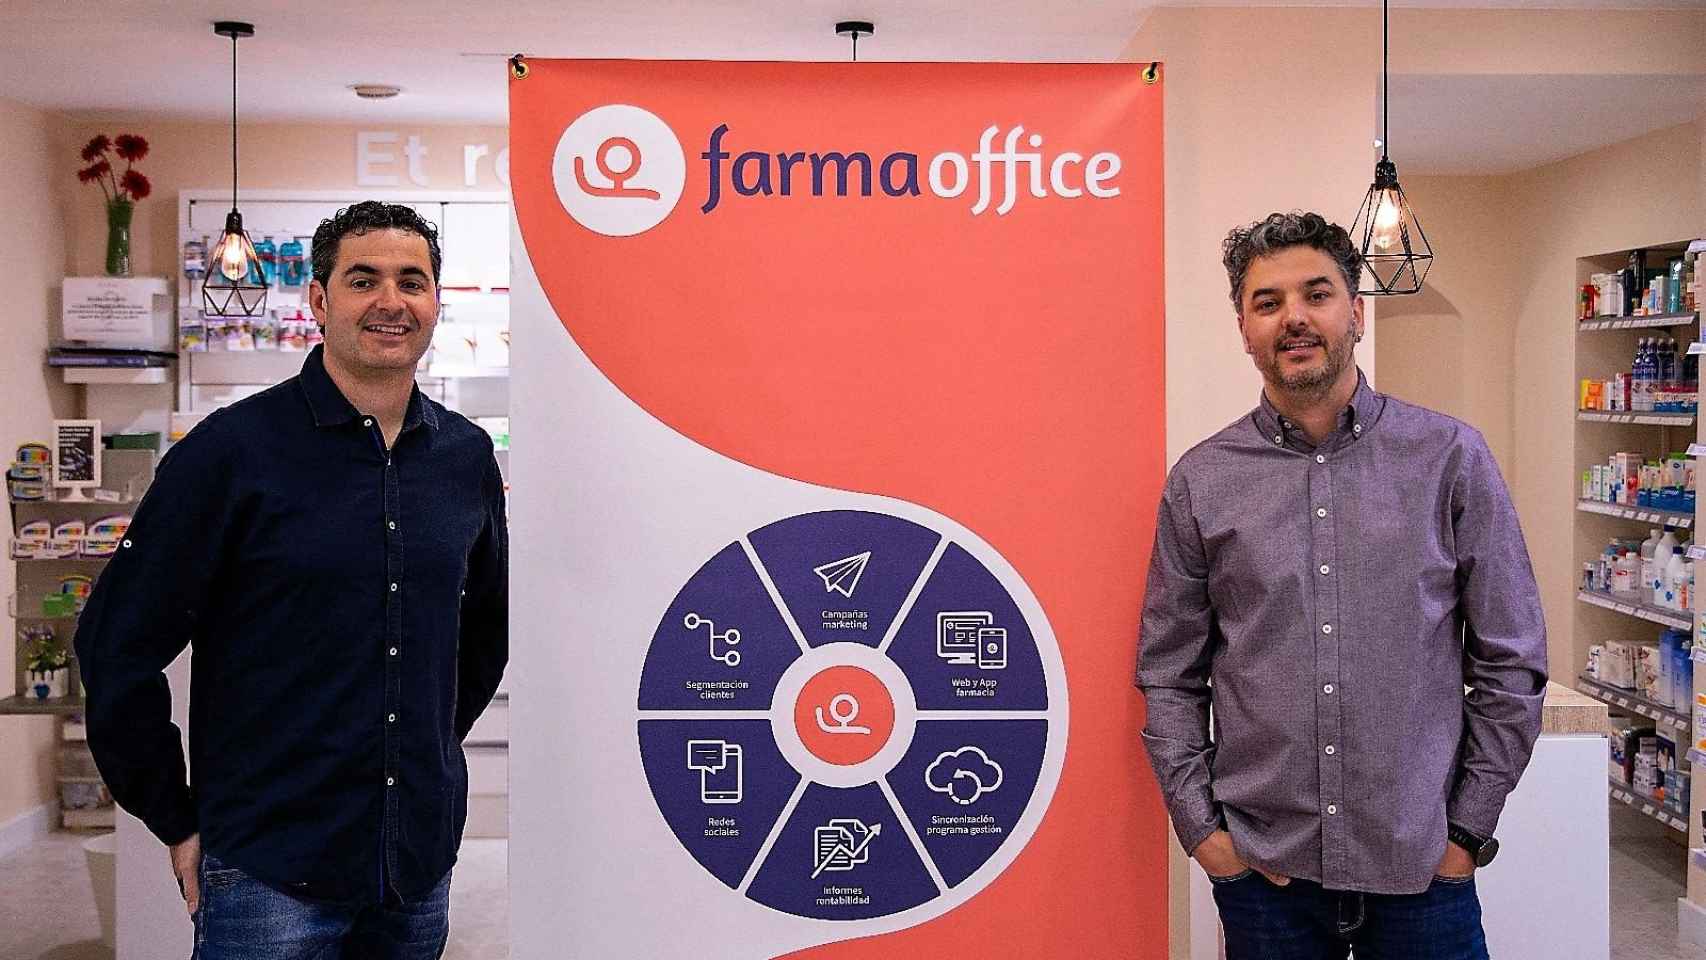 Los fundadores de Farmaoffice, Marc Cases e Isaac Fàbrega, creadores de un 'software' para mejorar la comunicación entre farmacias y clientes / CG